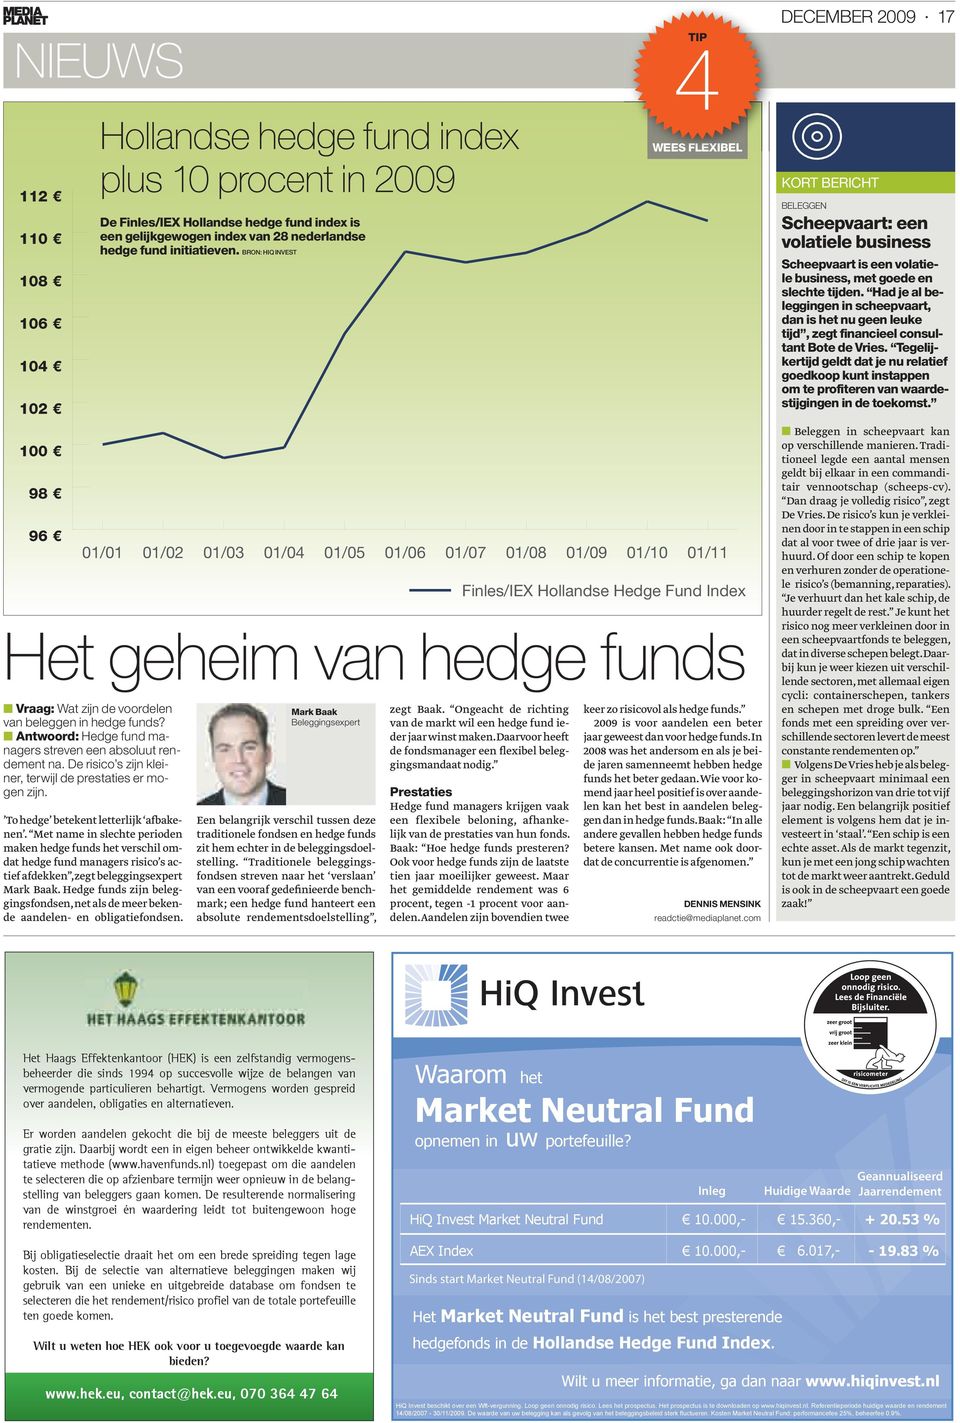 Hedge funds zijn beleggingsfondsen, net als de meer bekende aandelen- en obligatiefondsen.